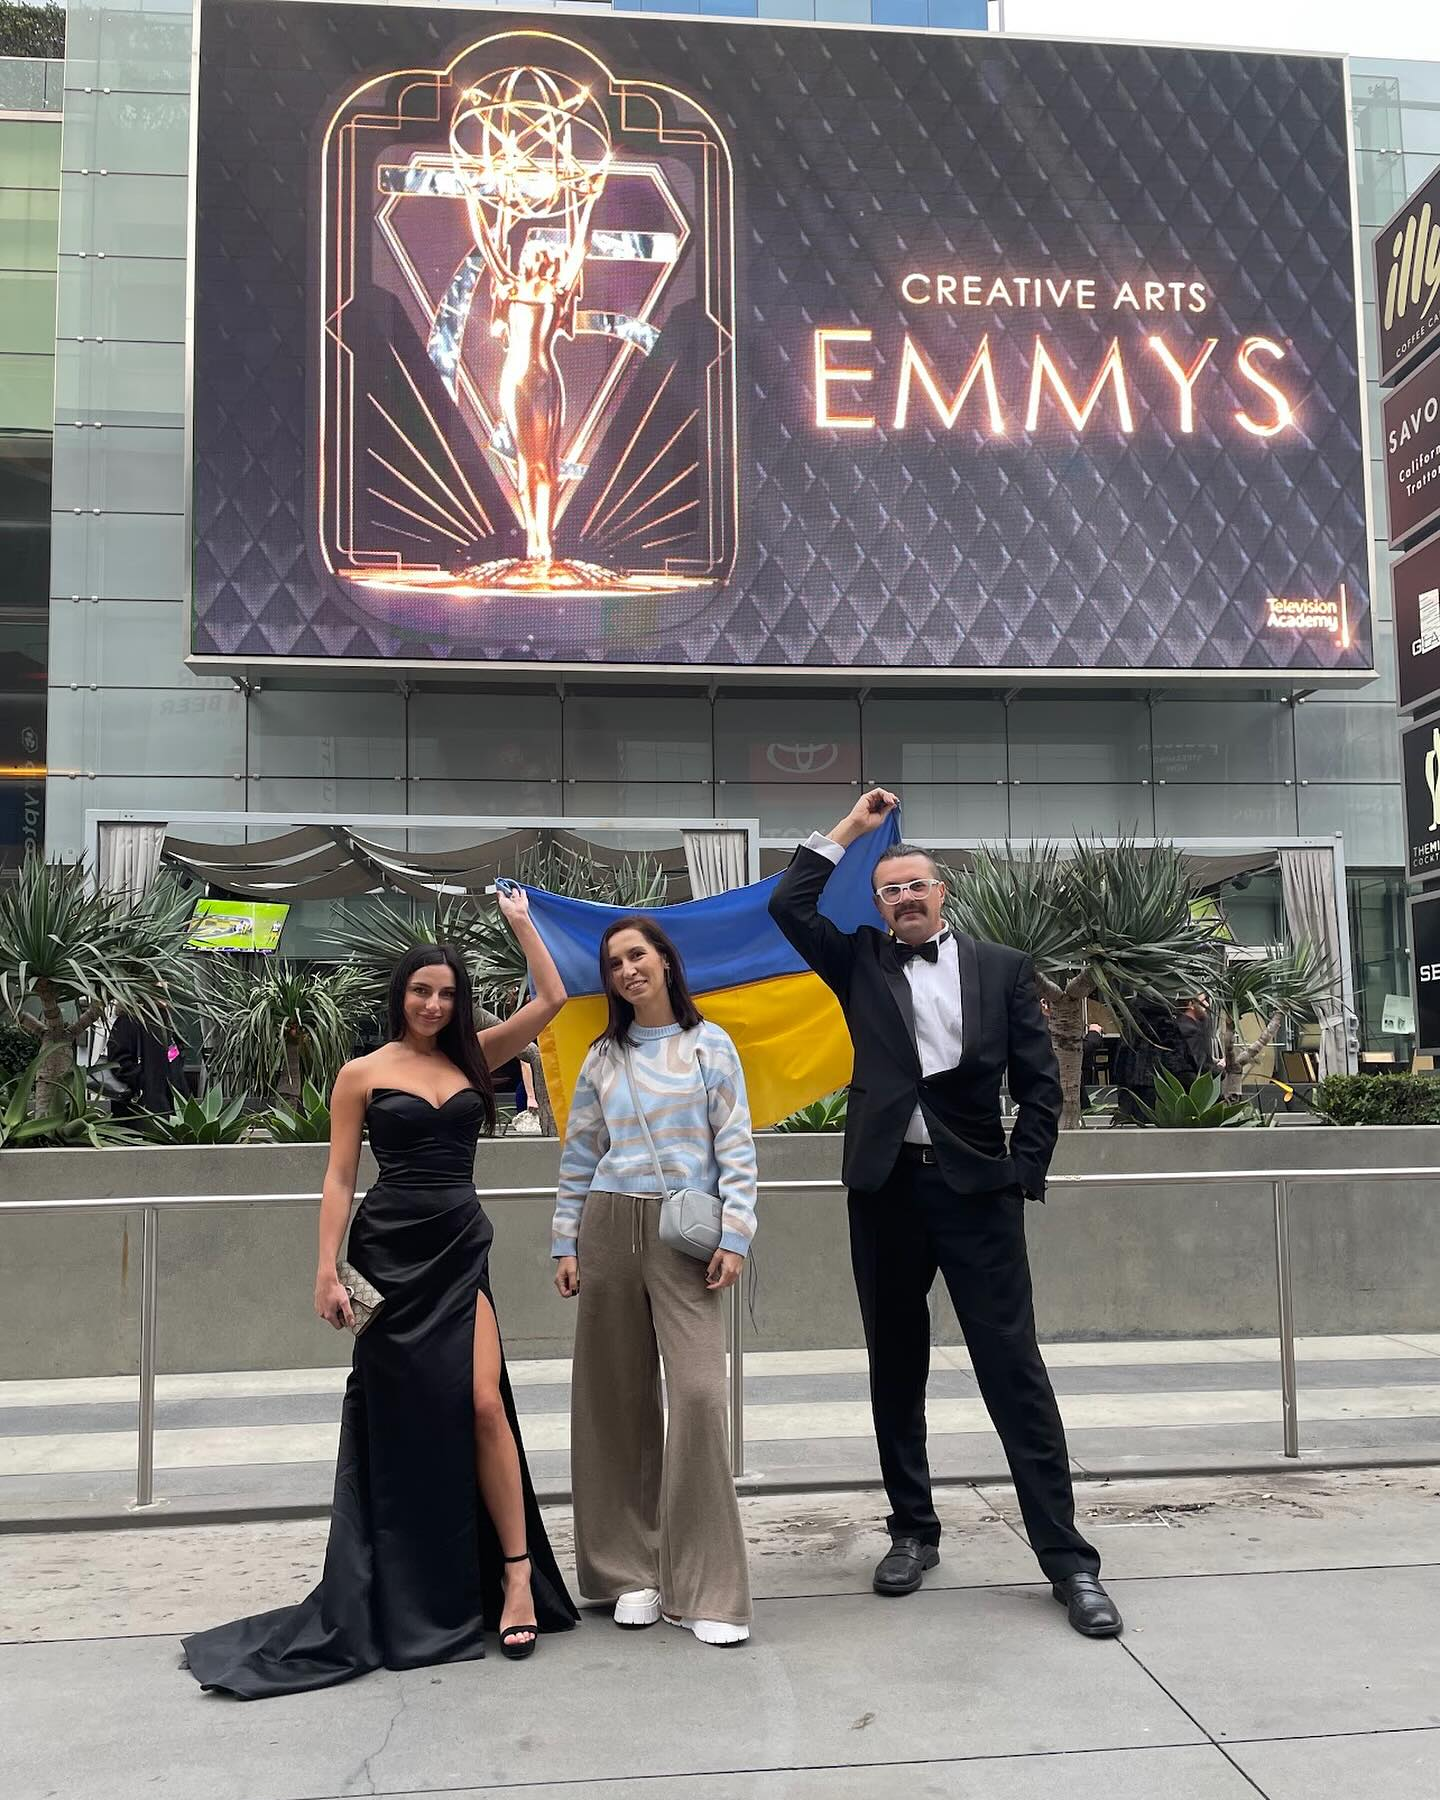 KWA Sound Production из Украины вошла в мировой клуб кинематографии, получив заслуженную номинацию на Emmy Award.